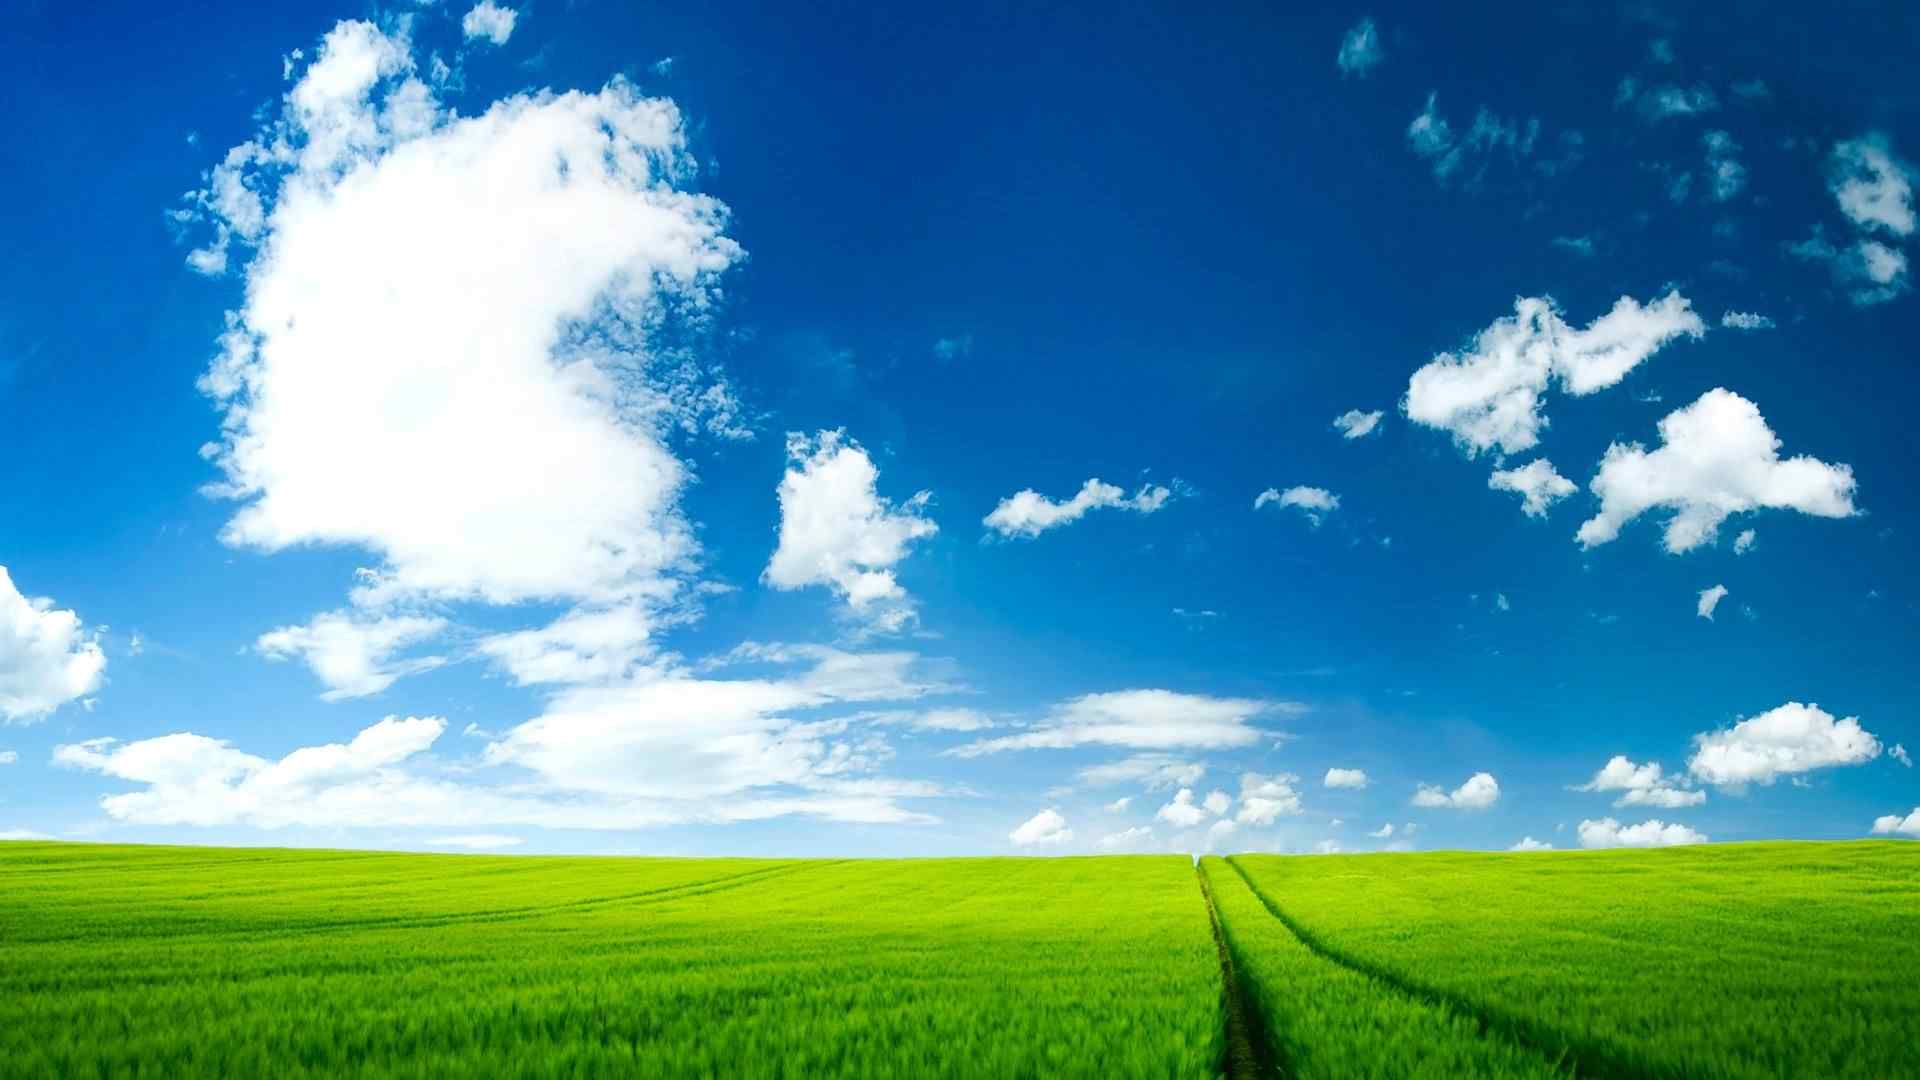 绿色草原与晴朗天空护眼桌面壁纸